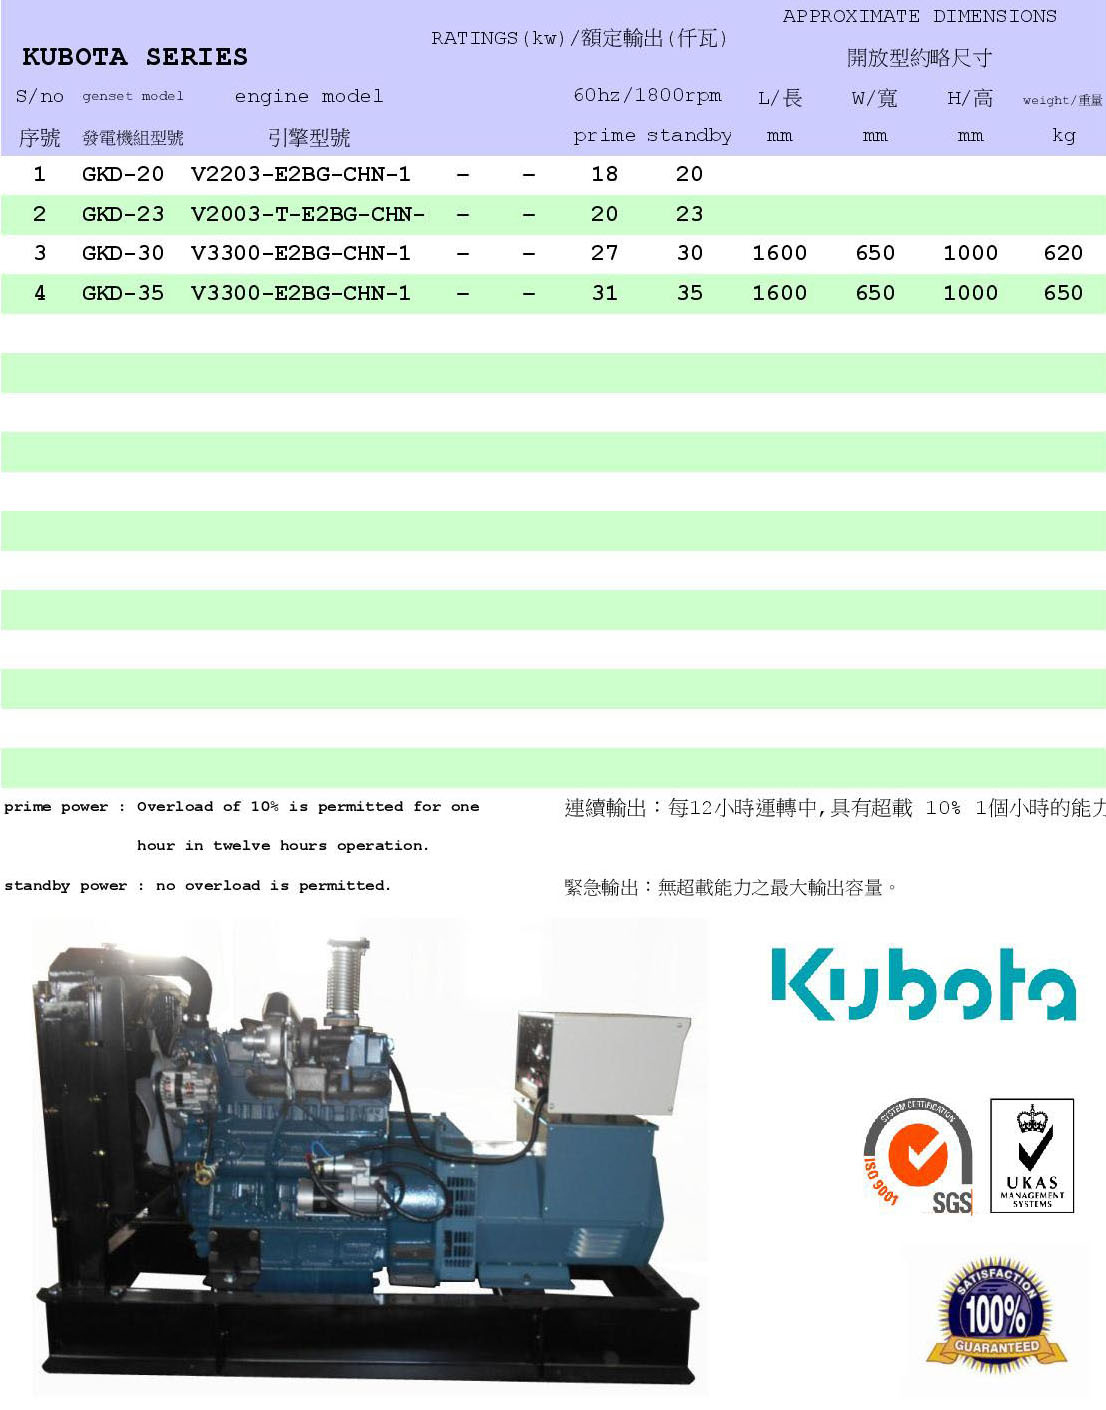 KUBOTA引擎發電機組型錄下載連結